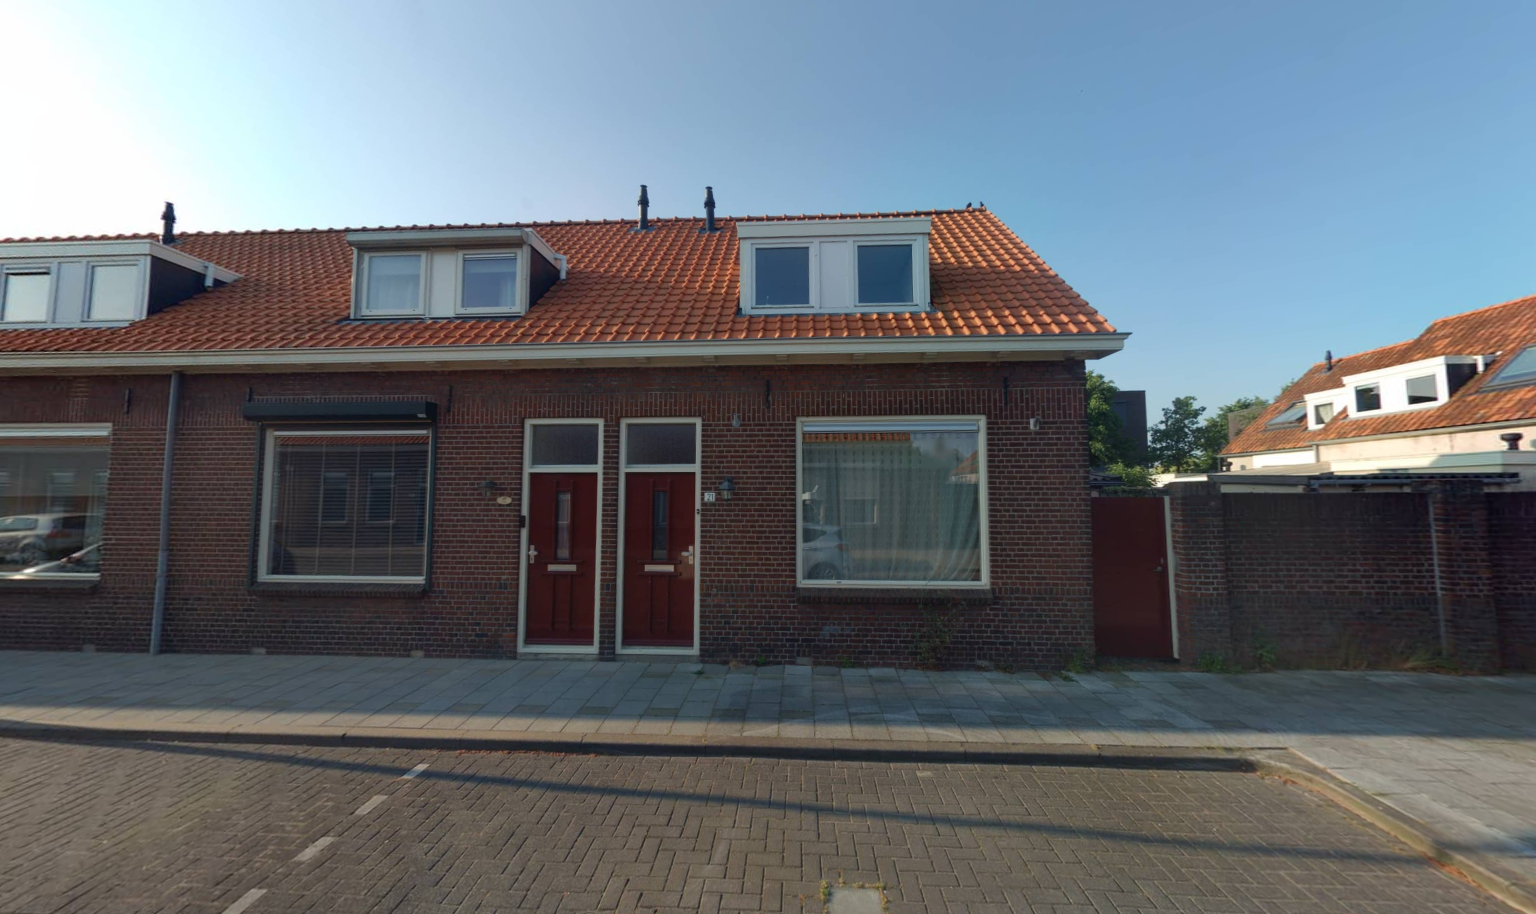 Koningin Sophiastraat 21, 4615 JC Bergen op Zoom, Nederland